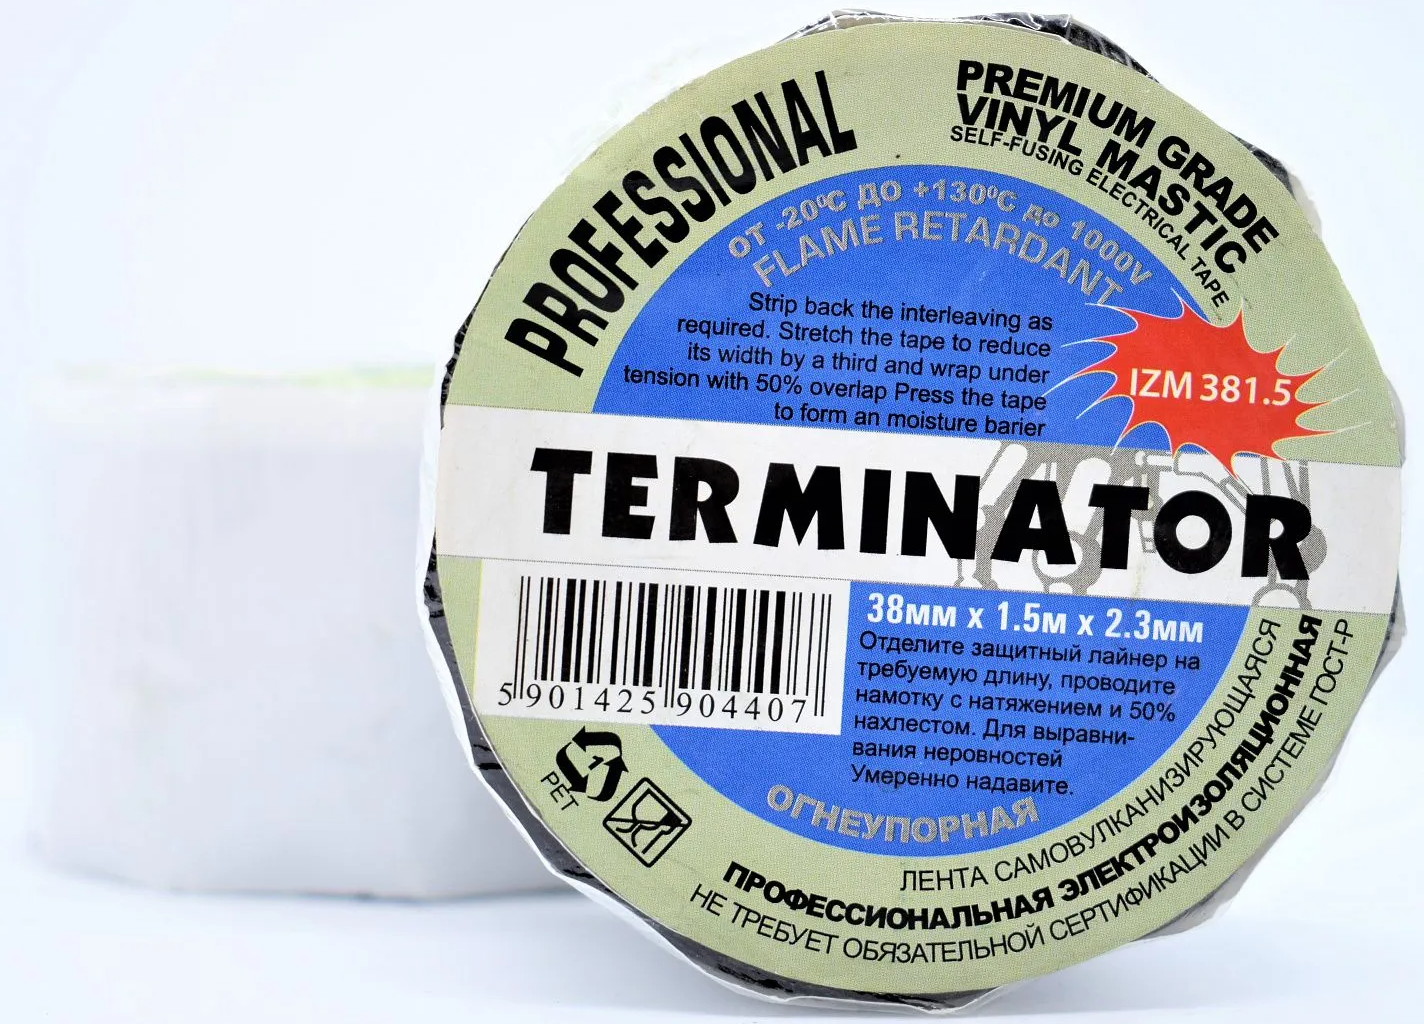 Изолента виниловая самовулканизирующаяся мастика 2,3 мм, 38 мм, 1,5 м Terminator IZM 381.5 - фото